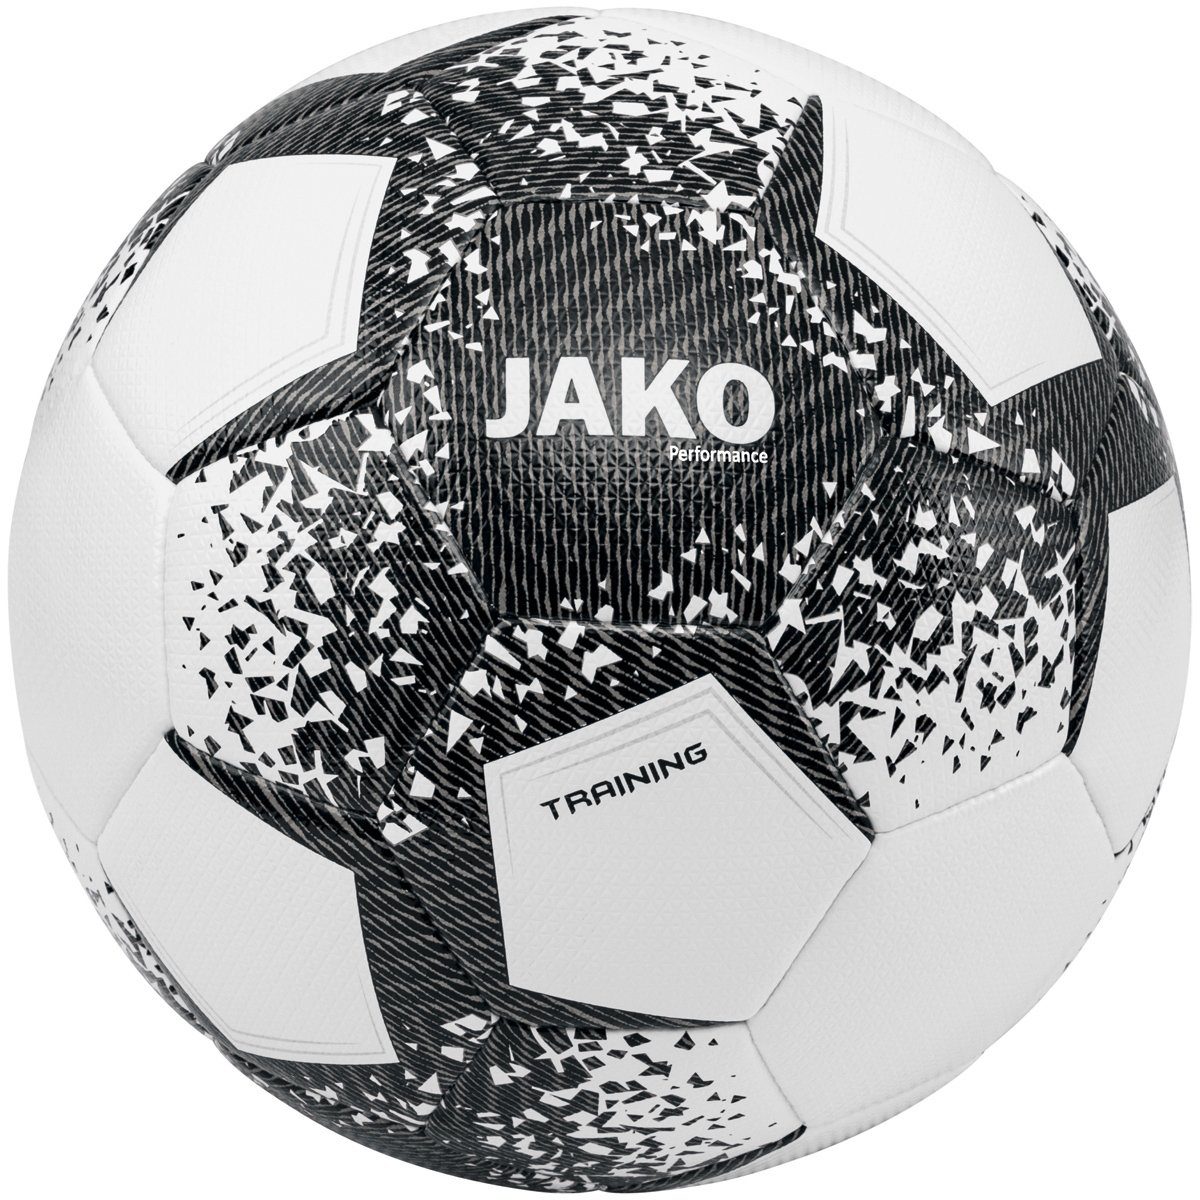 Jako Fußball - Performance Ball weiss/schwarz/steingrau 2301 Trainingsball (Ganzjahresartikel)